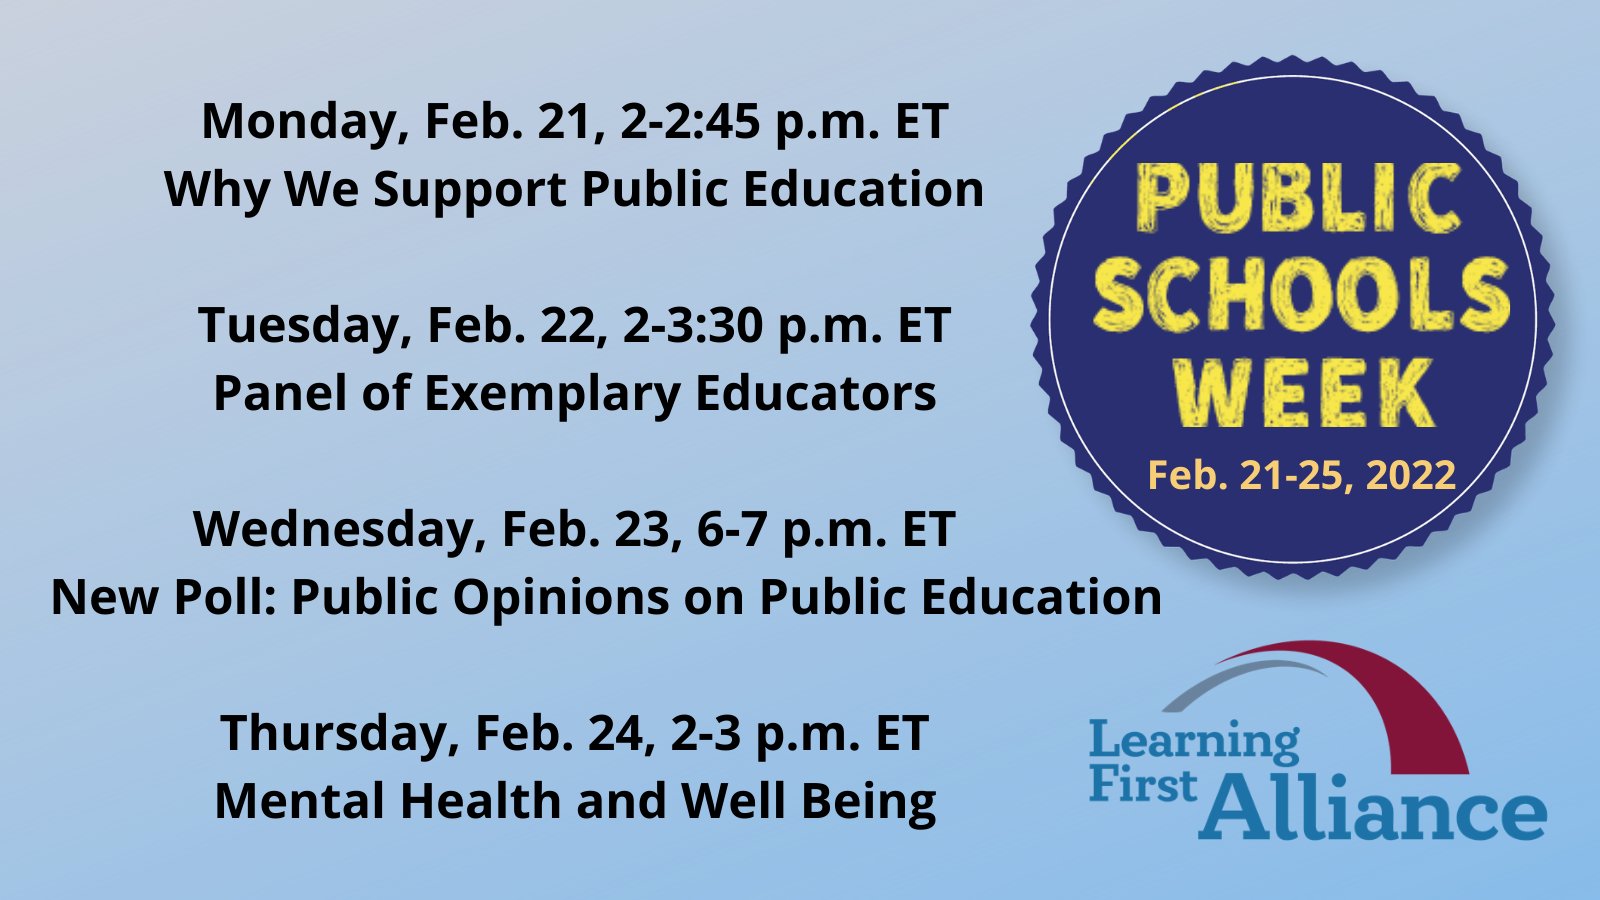 Public Schools Week Schedule